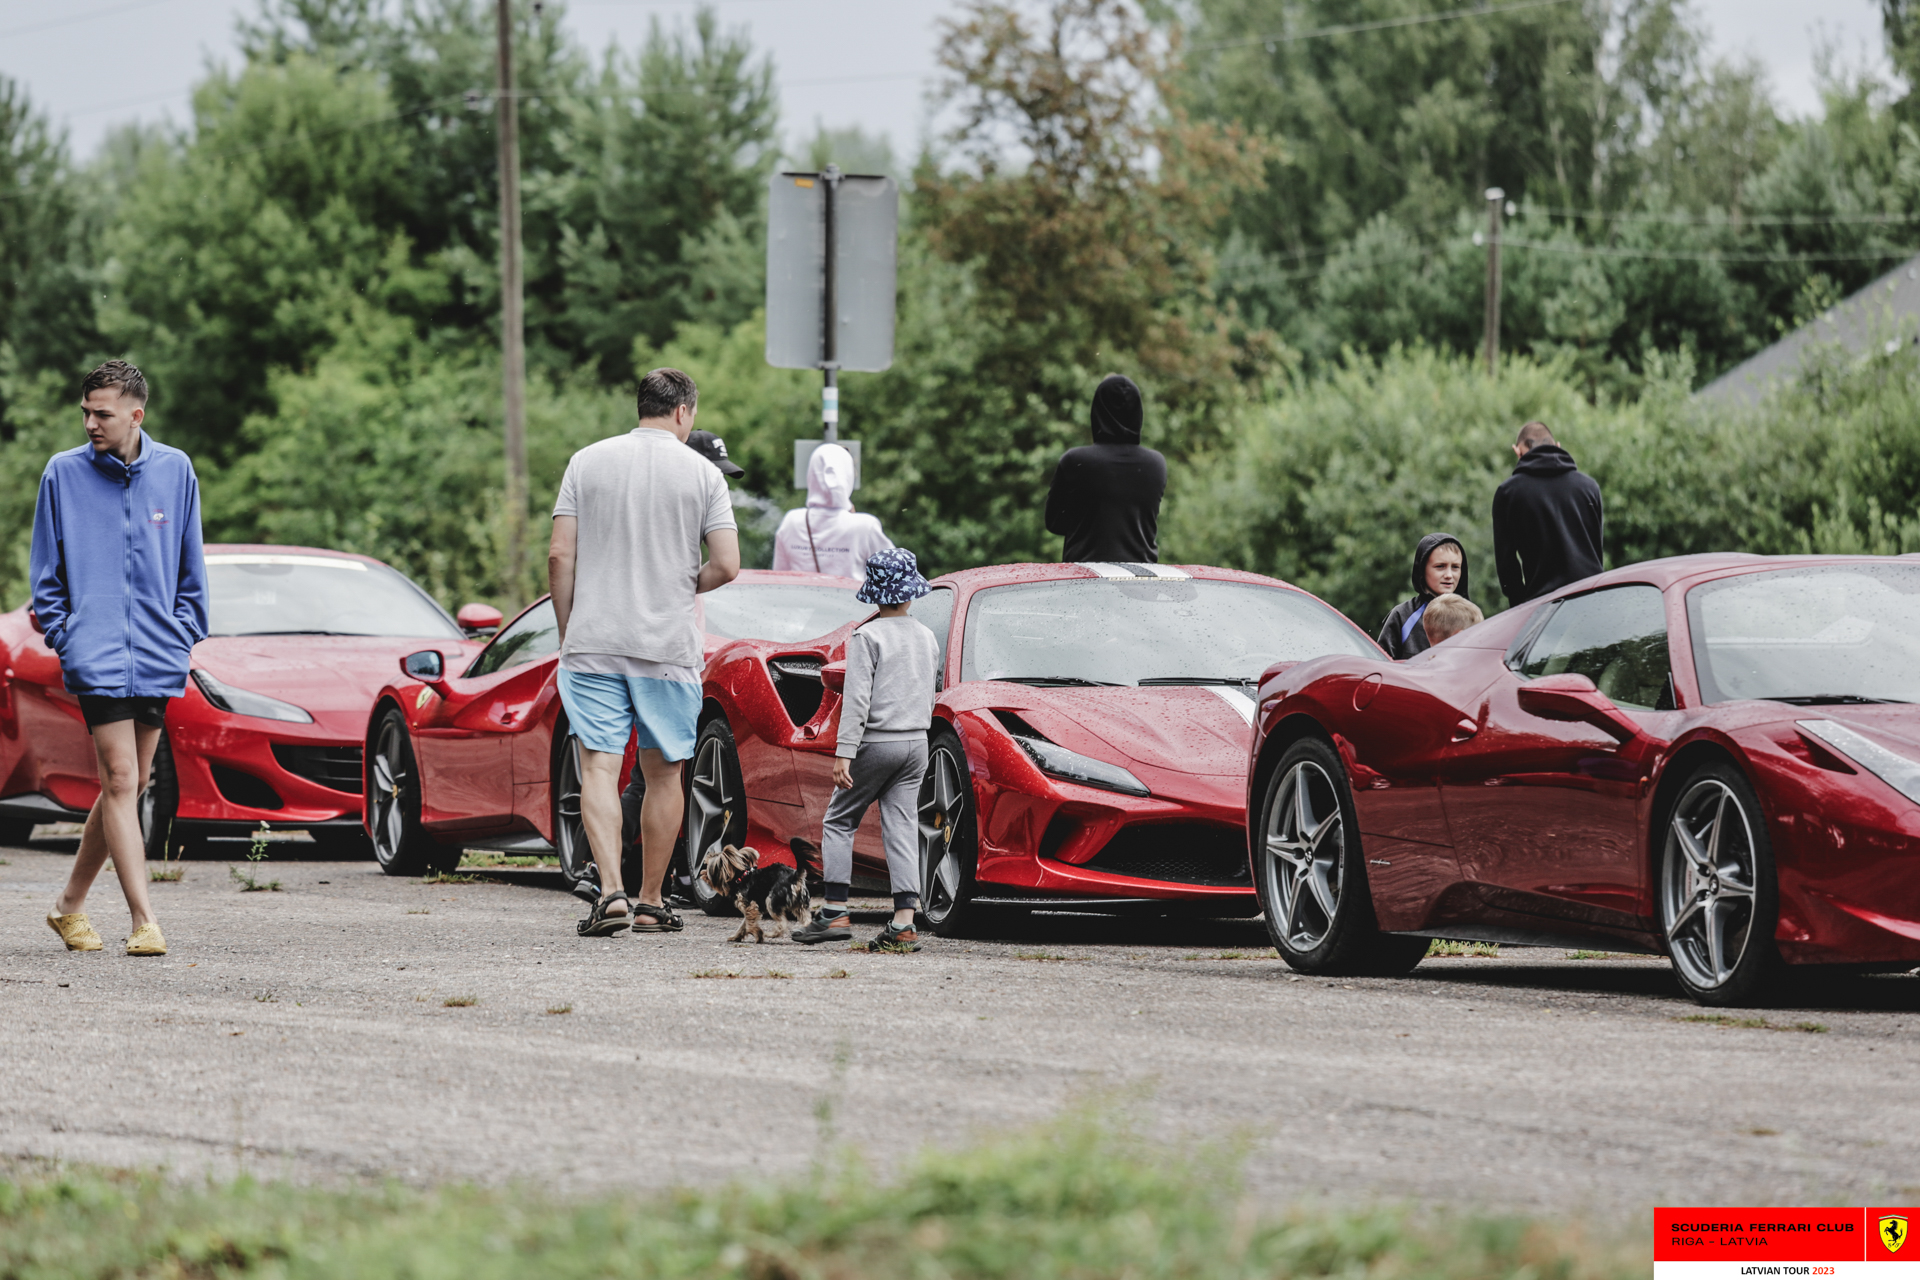 The parking of Razna pearl full of Ferraris.